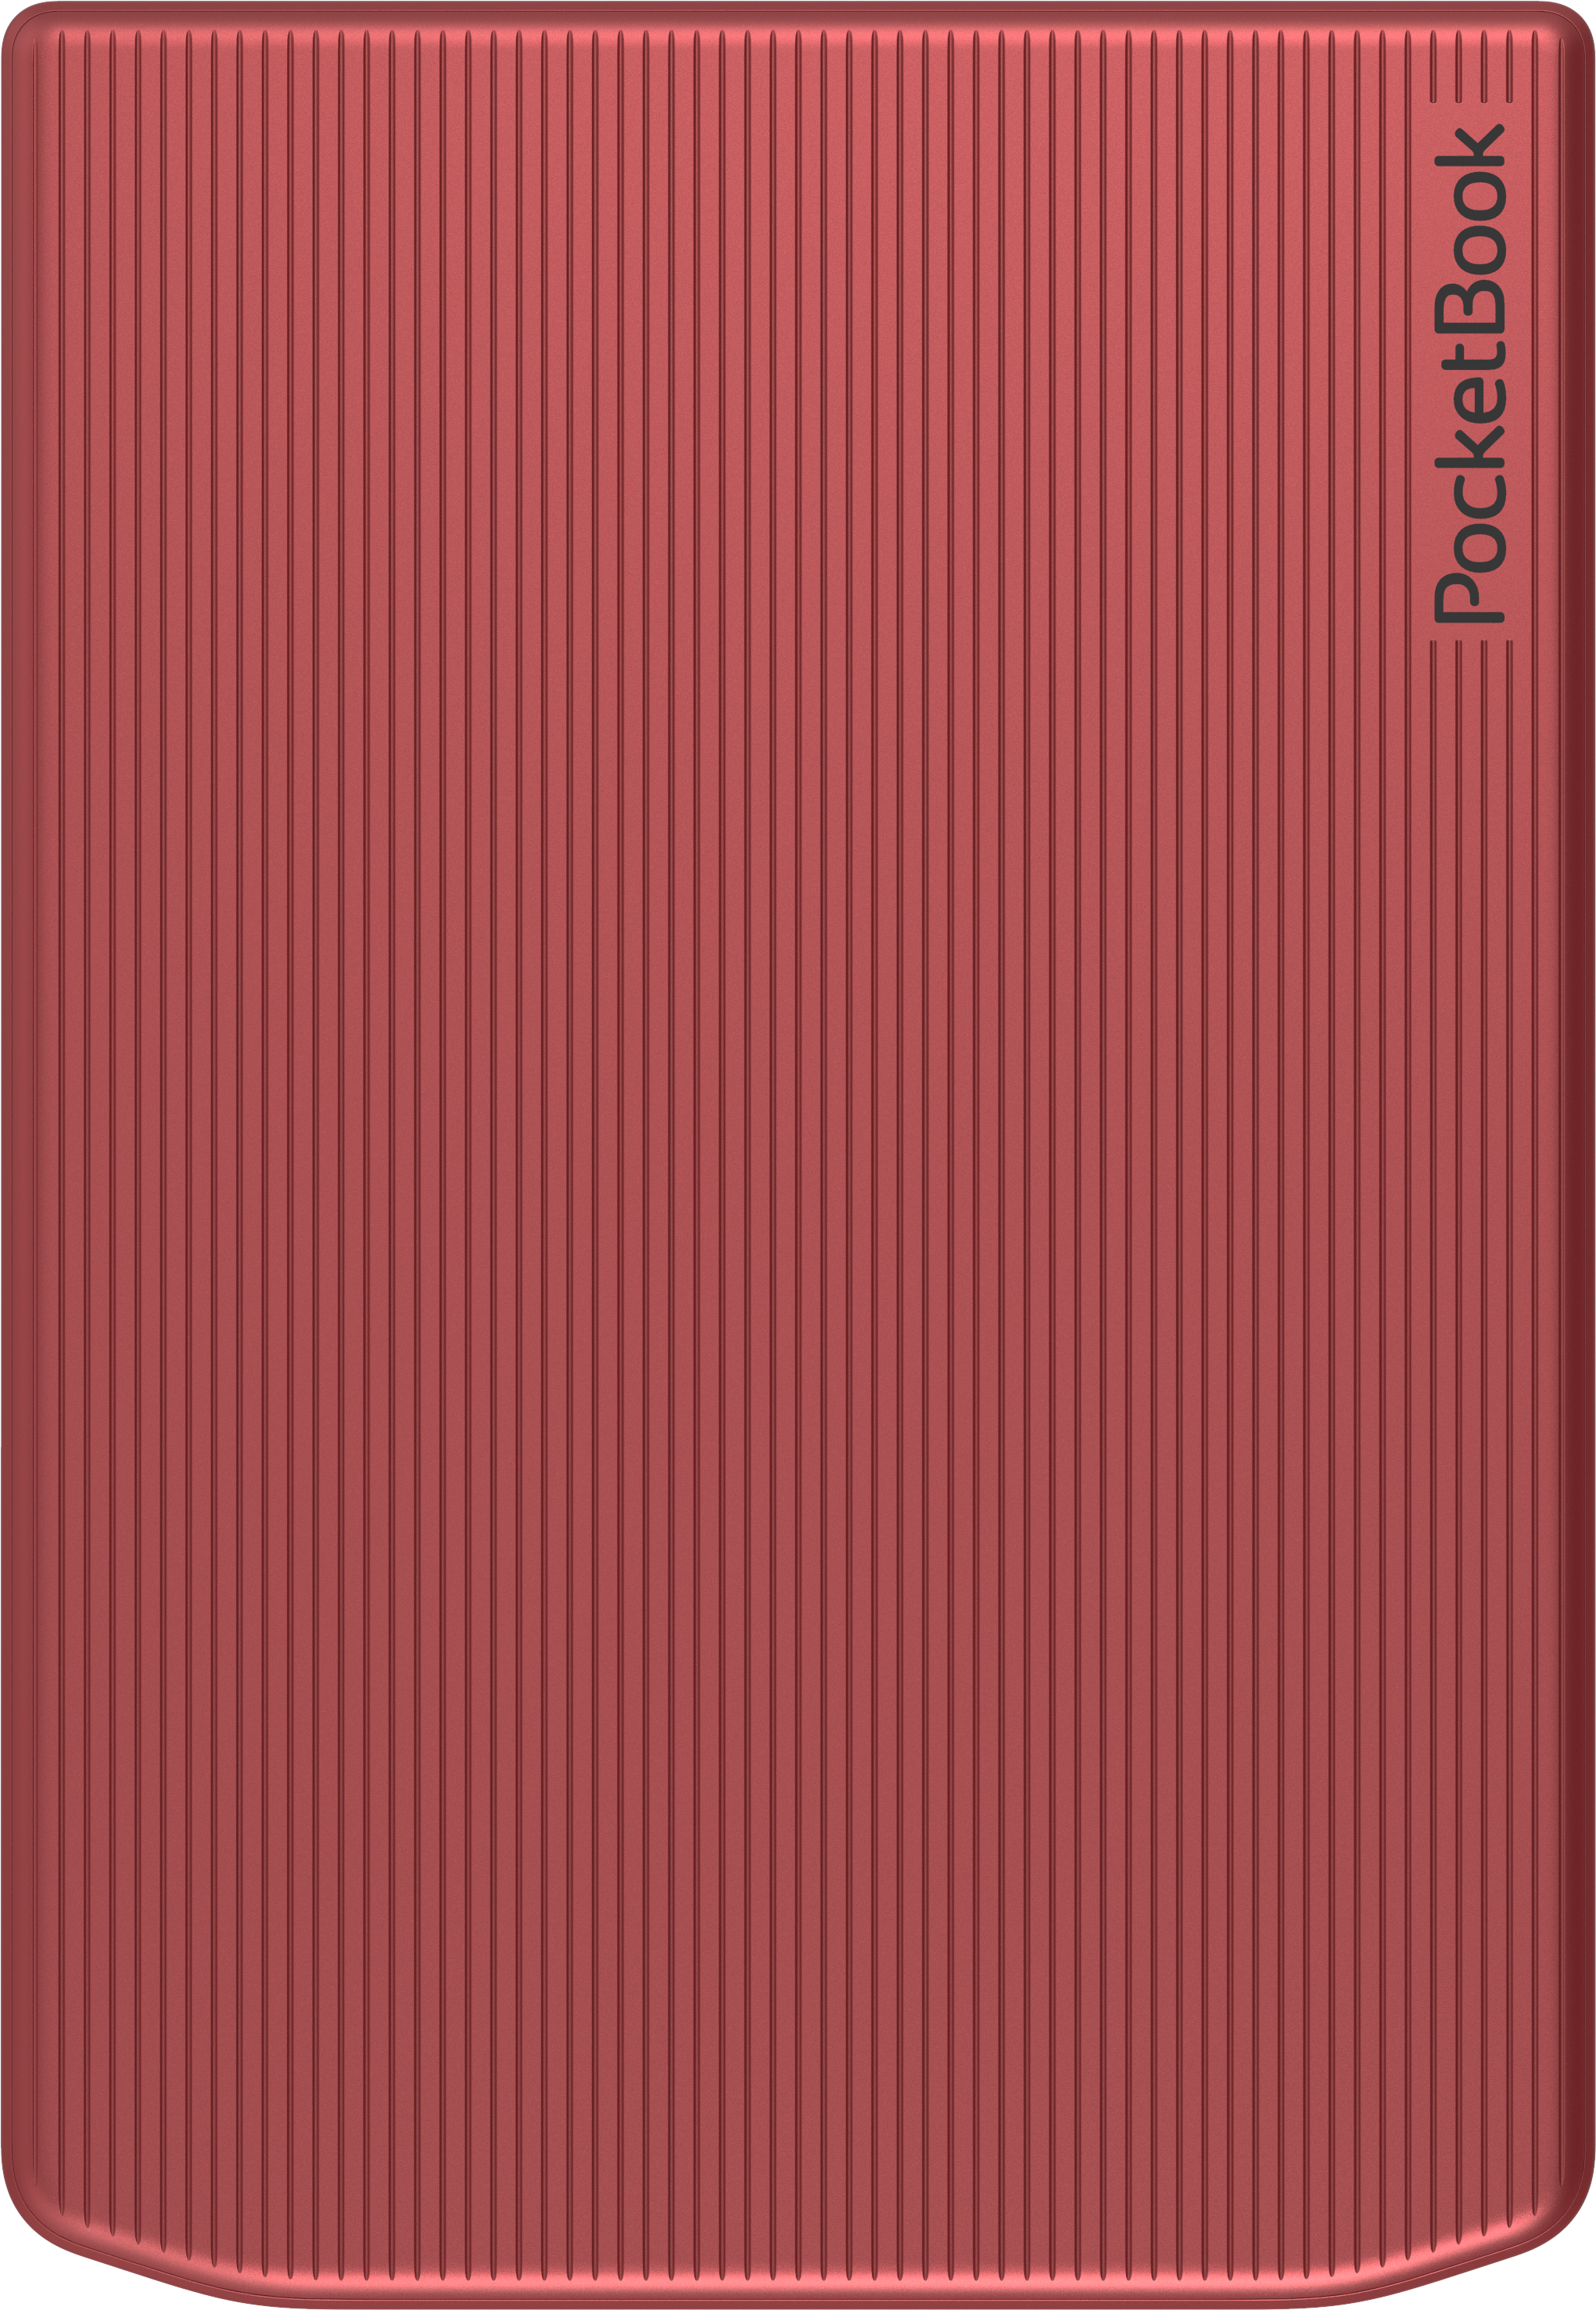 Libro Electronico Ebook POCKETBOOK Verse Pro Ereader 6 16 Gb Rojo Passion  Red